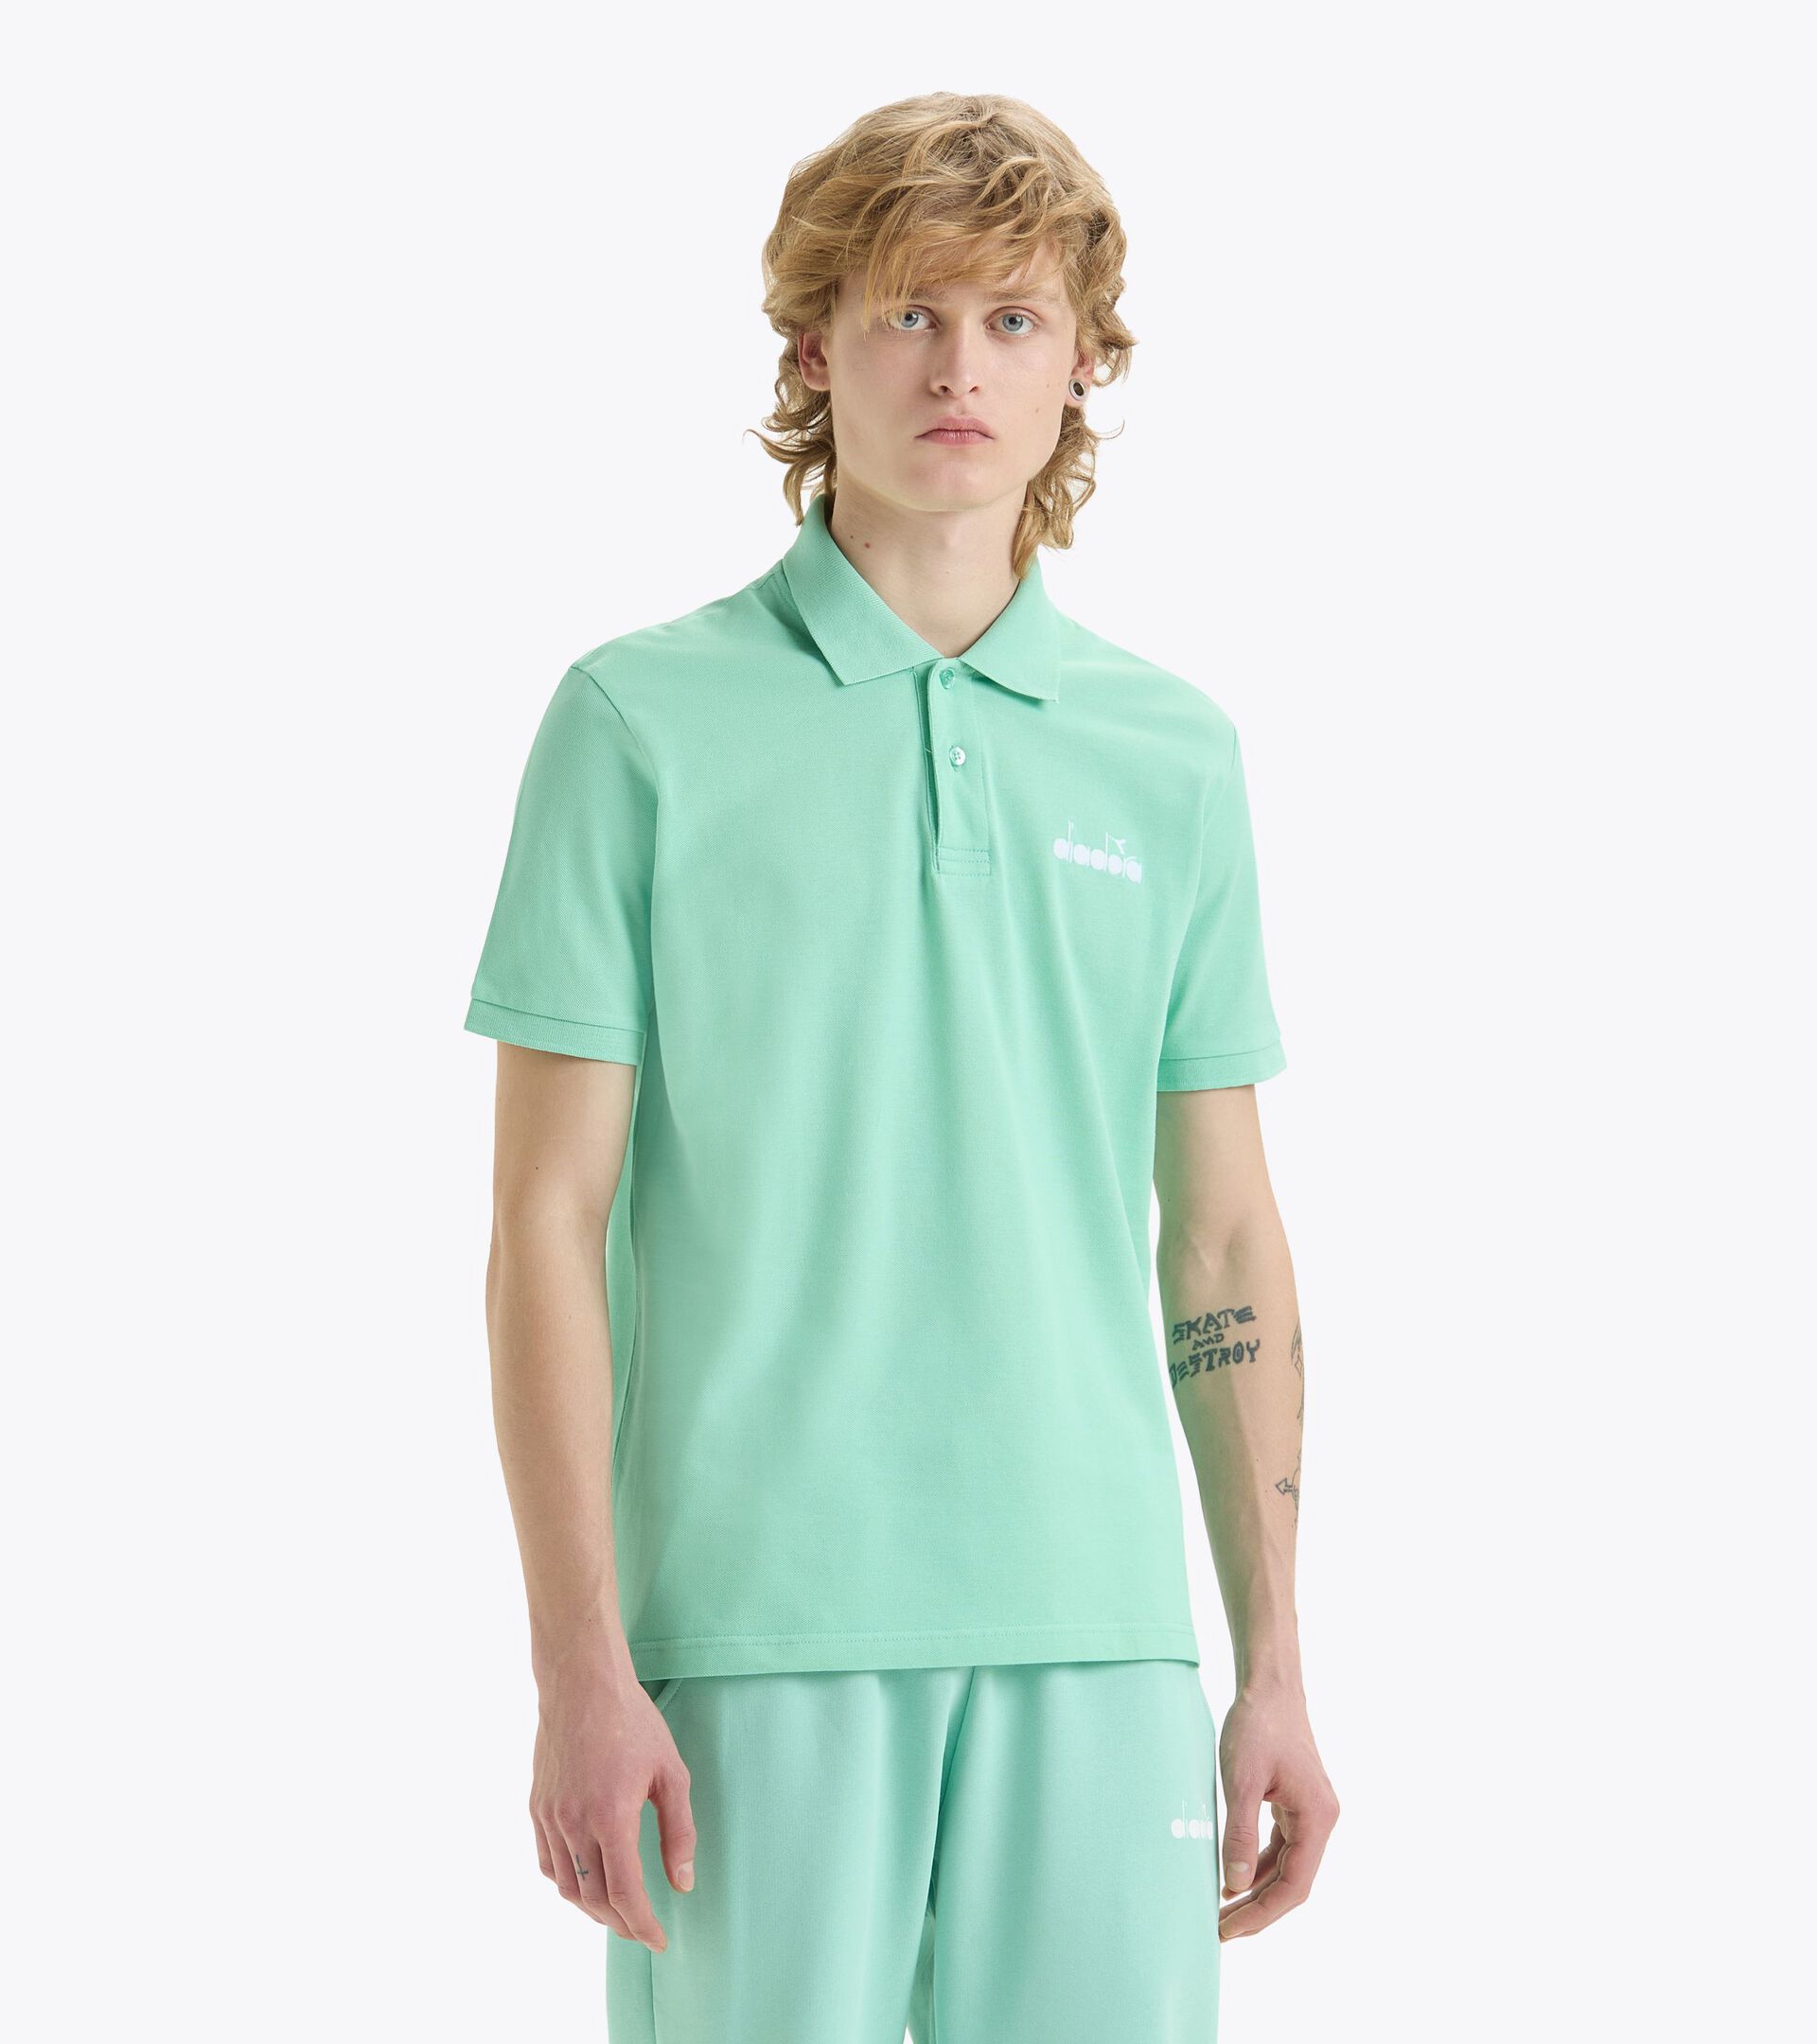 Sporty polo shirt - Made in Italy - Gender Neutral POLO SS LOGO NEON GREEN - Diadora